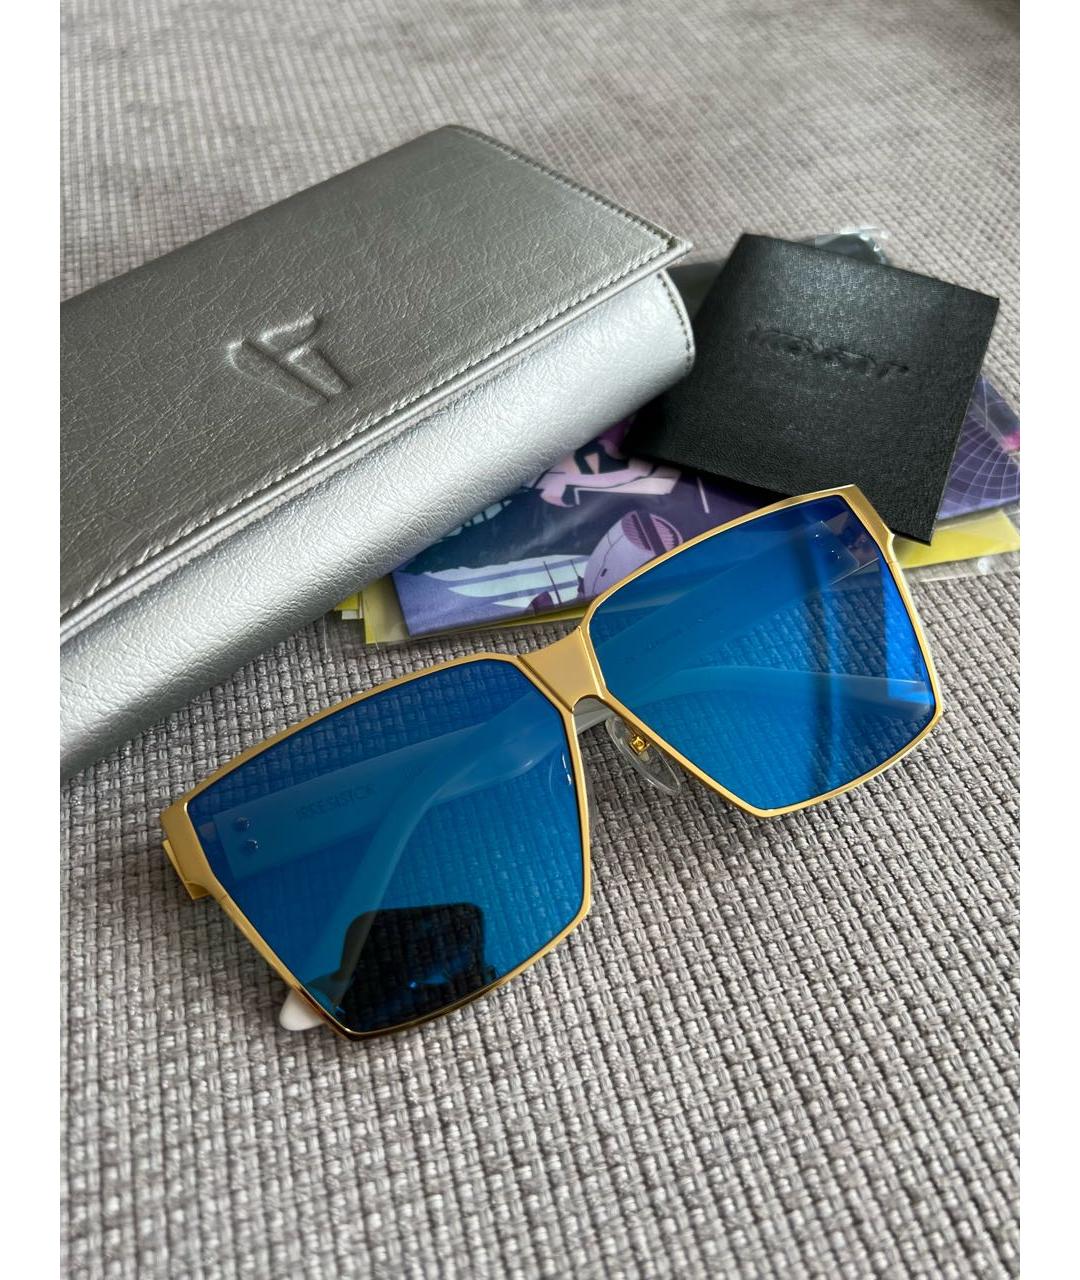 IRRESISTOR Синие металлические солнцезащитные очки, фото 2